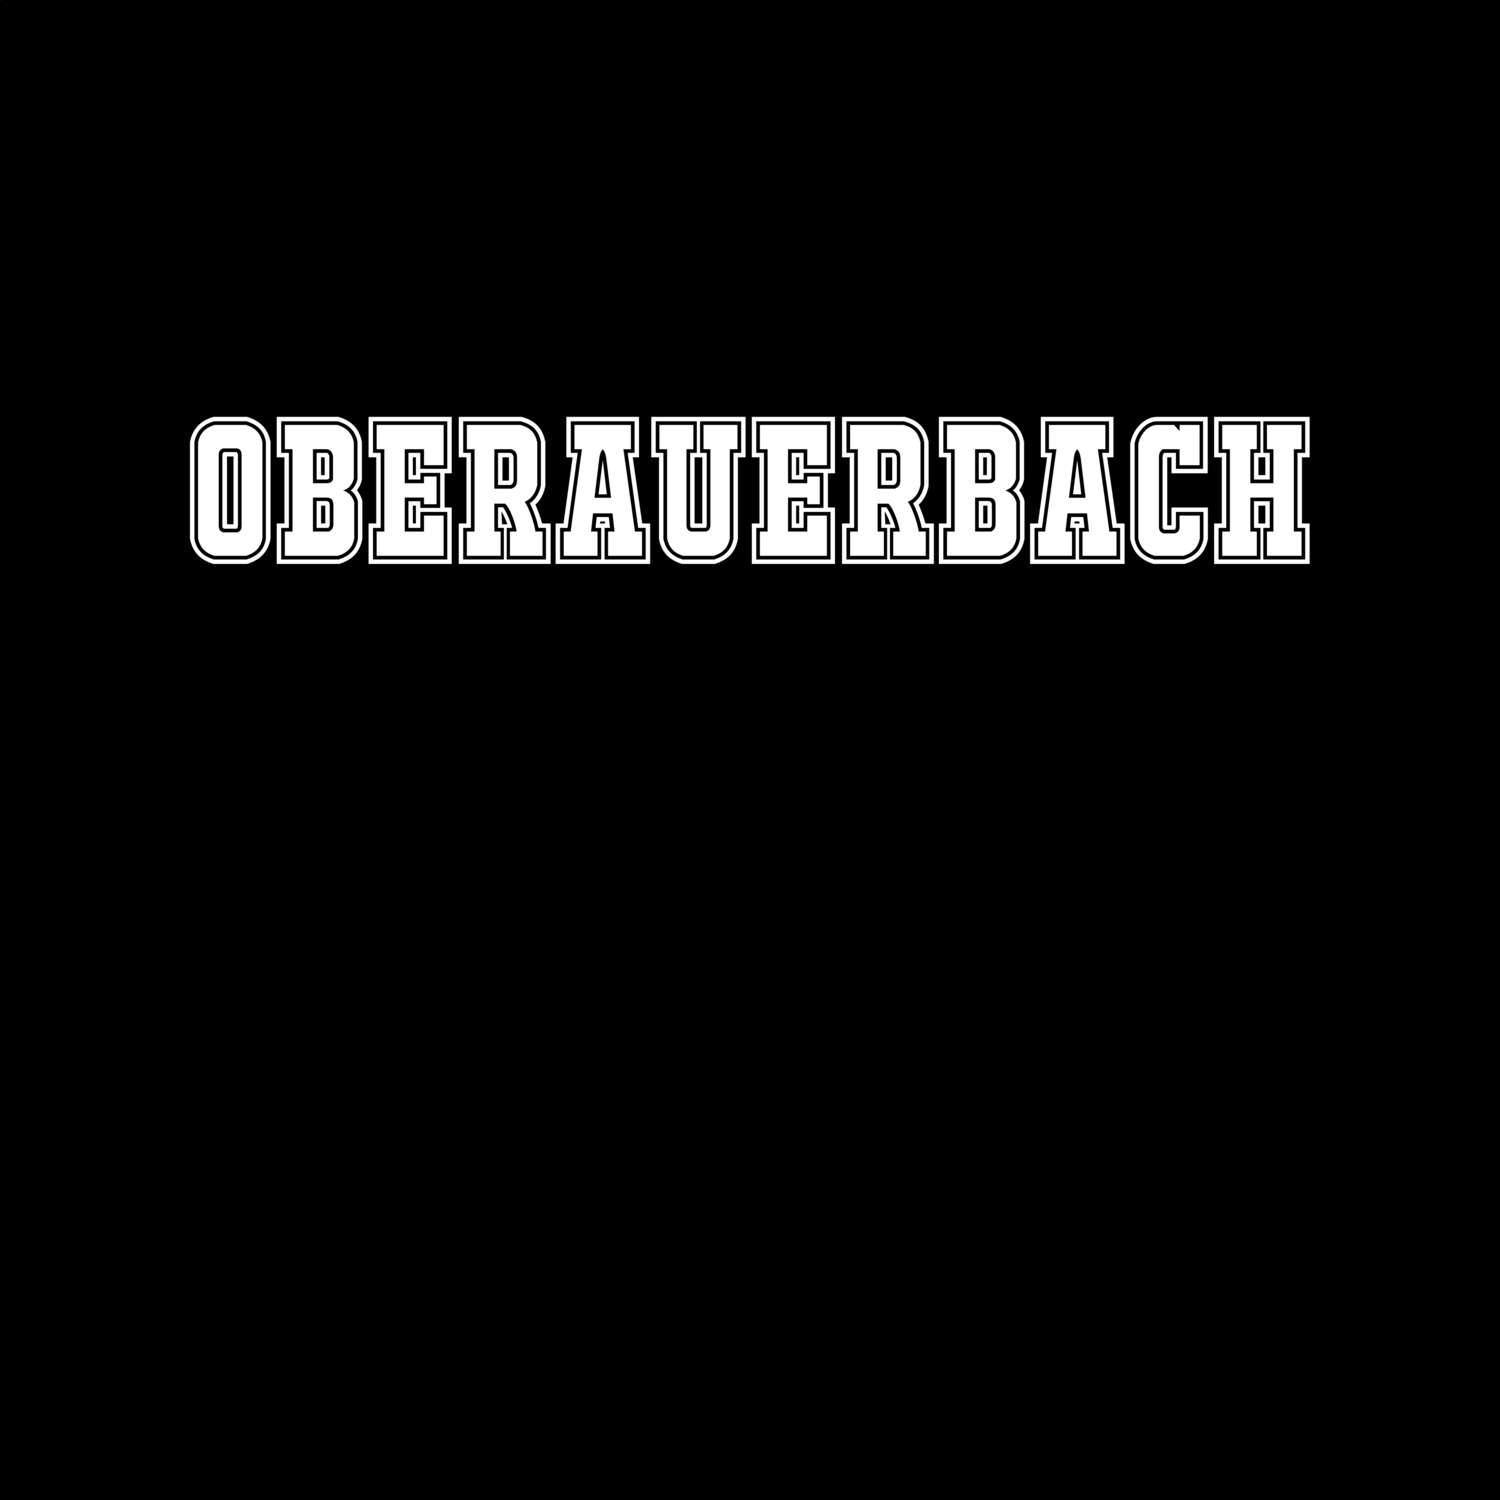 Oberauerbach T-Shirt »Classic«